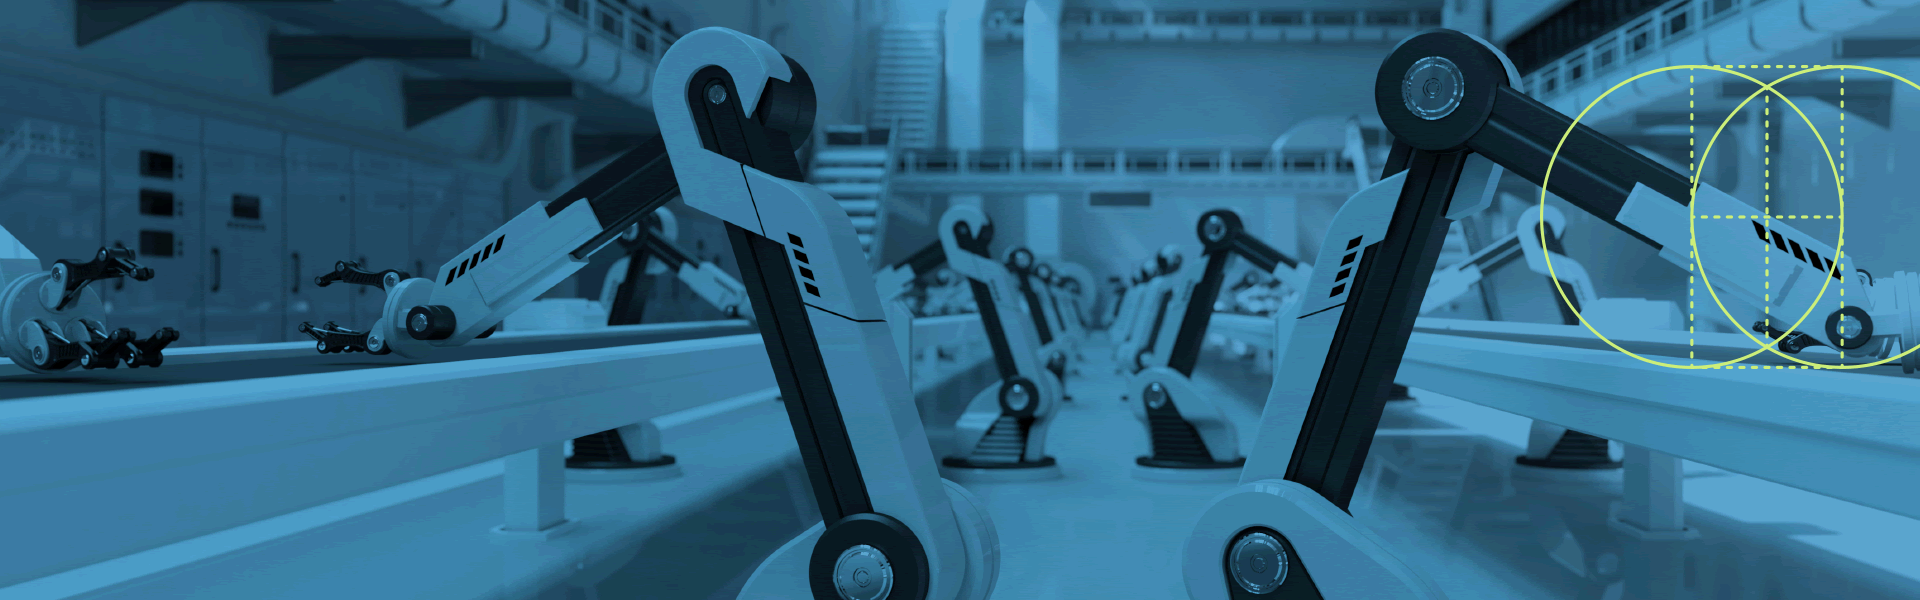 機器人在工廠